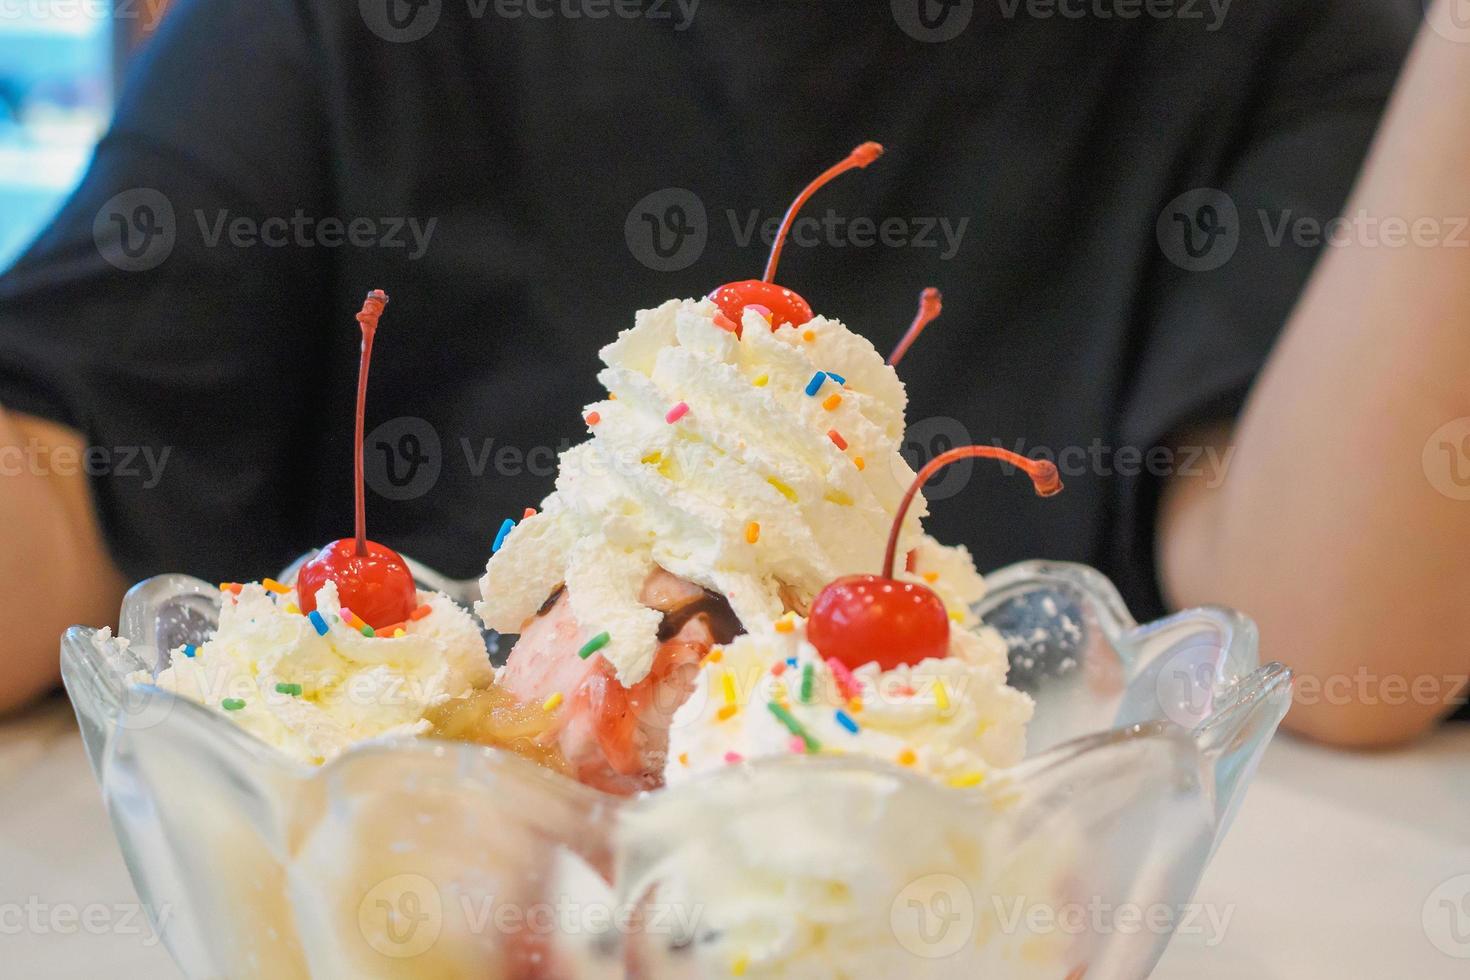 helado en recipiente de vidrio con crema batida y cereza roja encima foto